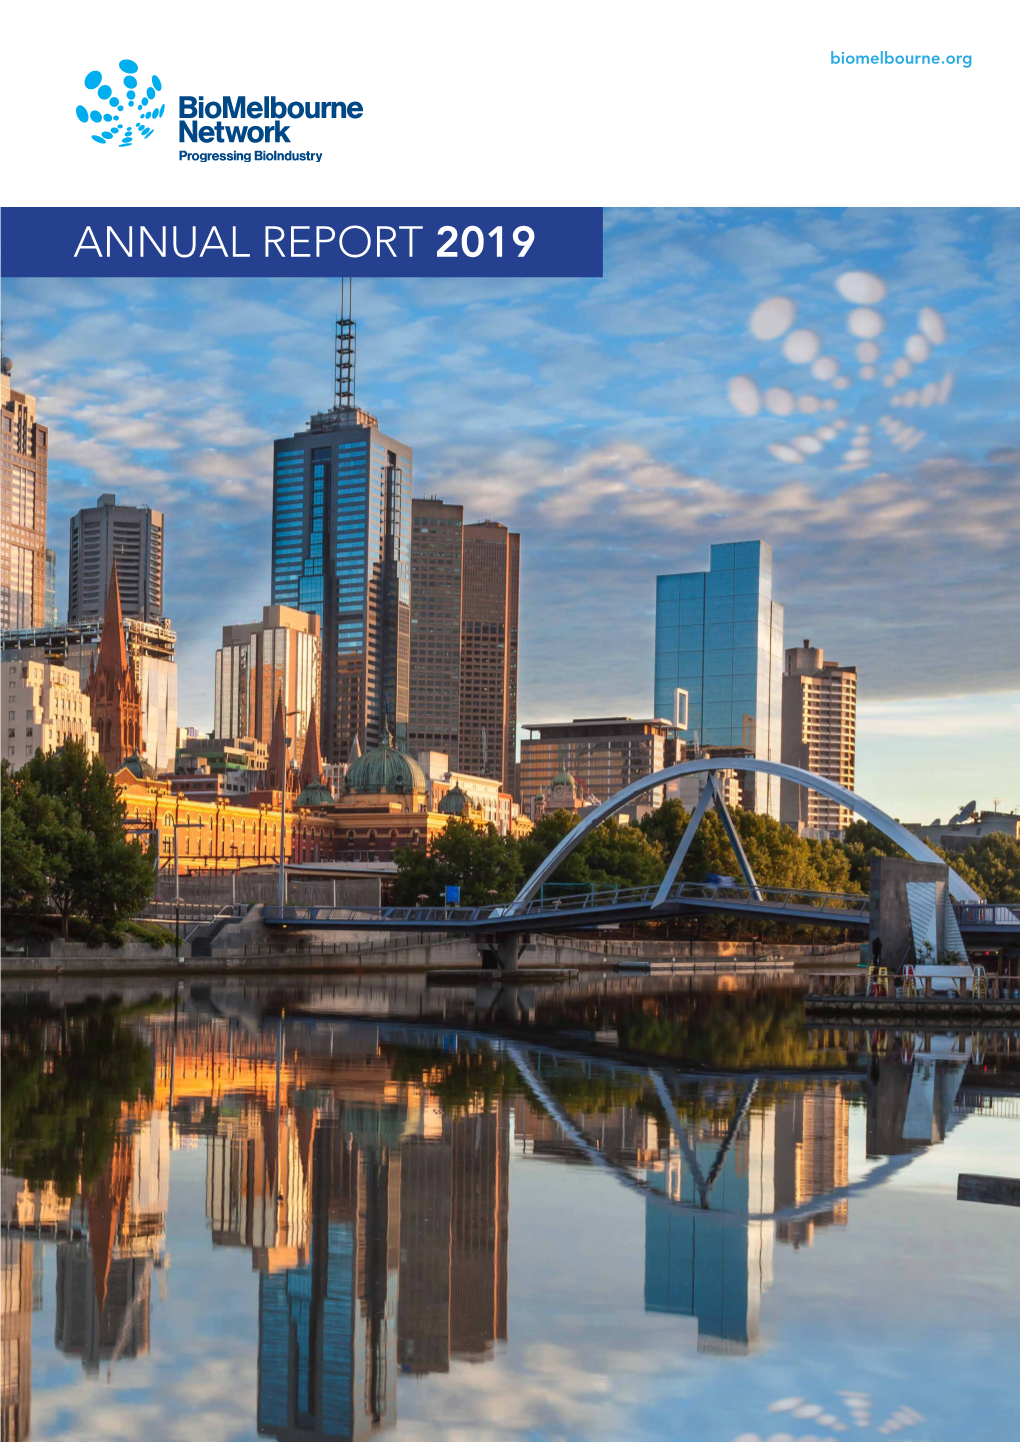 ANNUAL REPORT 2019 Biomelbourne Network ANNUAL REPORT 2019